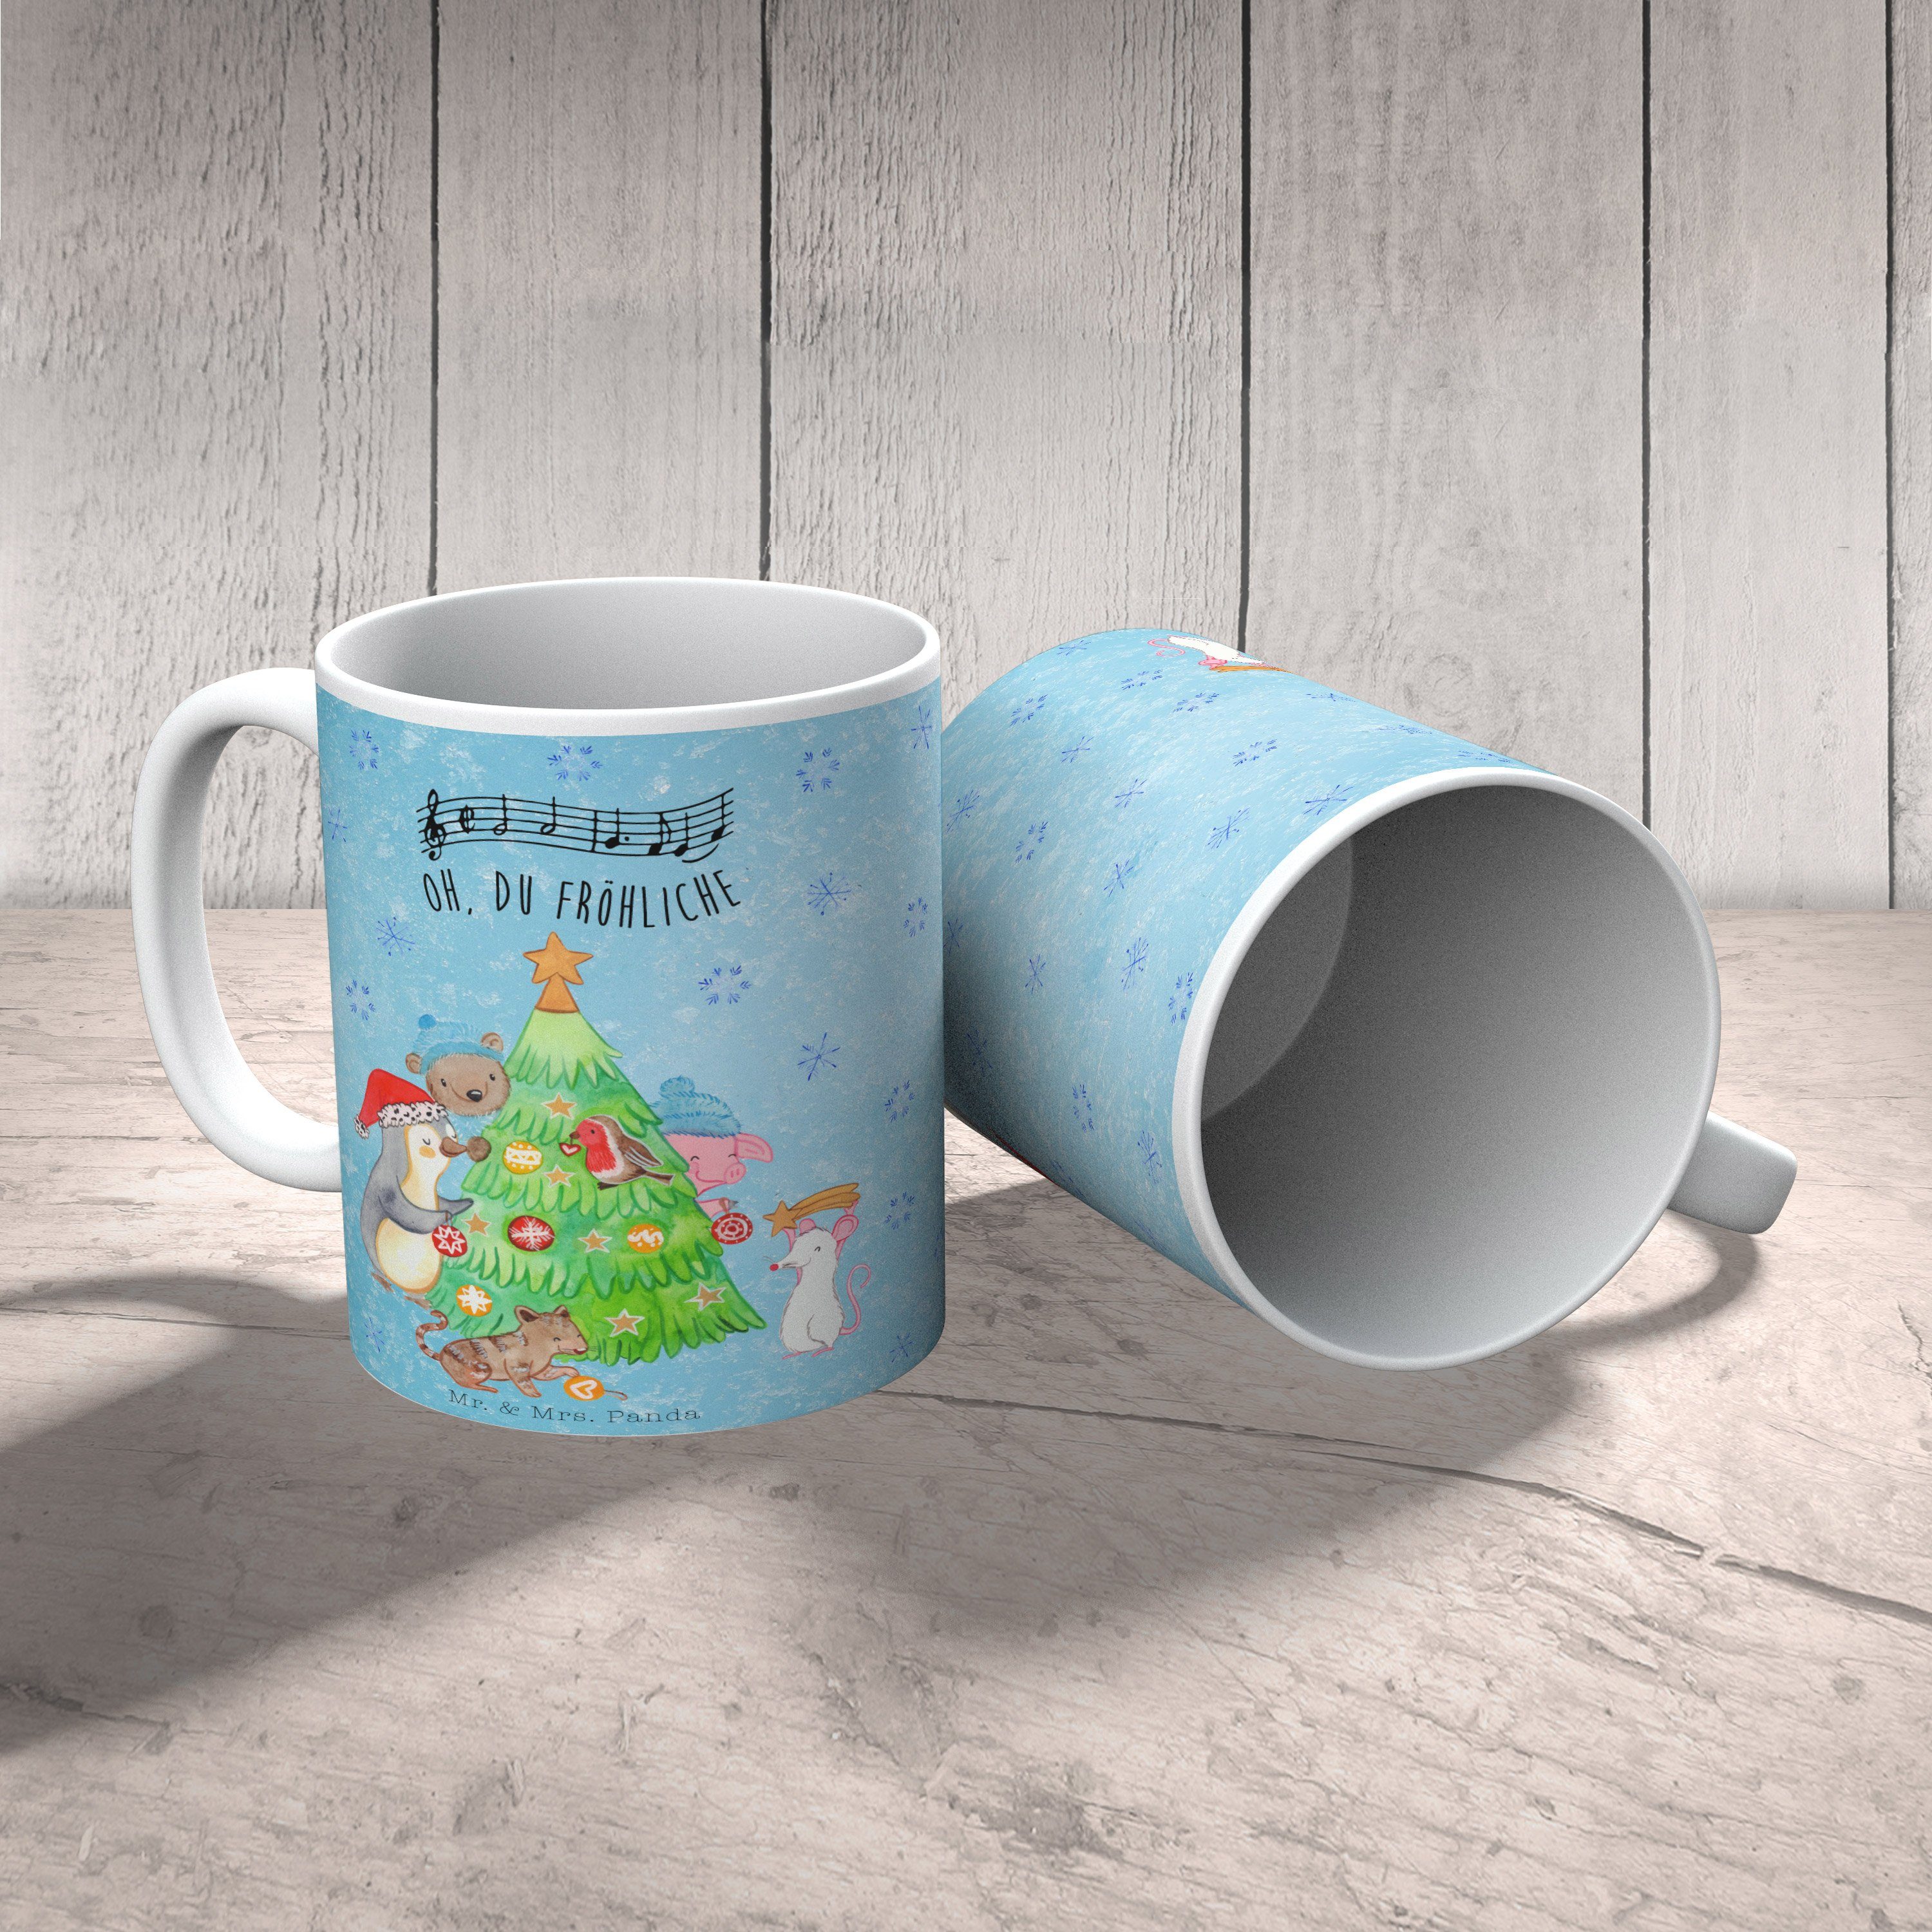 Mr. & Mrs. Panda Tasse H, schmücken Weihnachtsbaum Kaffeetasse, Geschenk, Advent, - Eisblau Keramik 